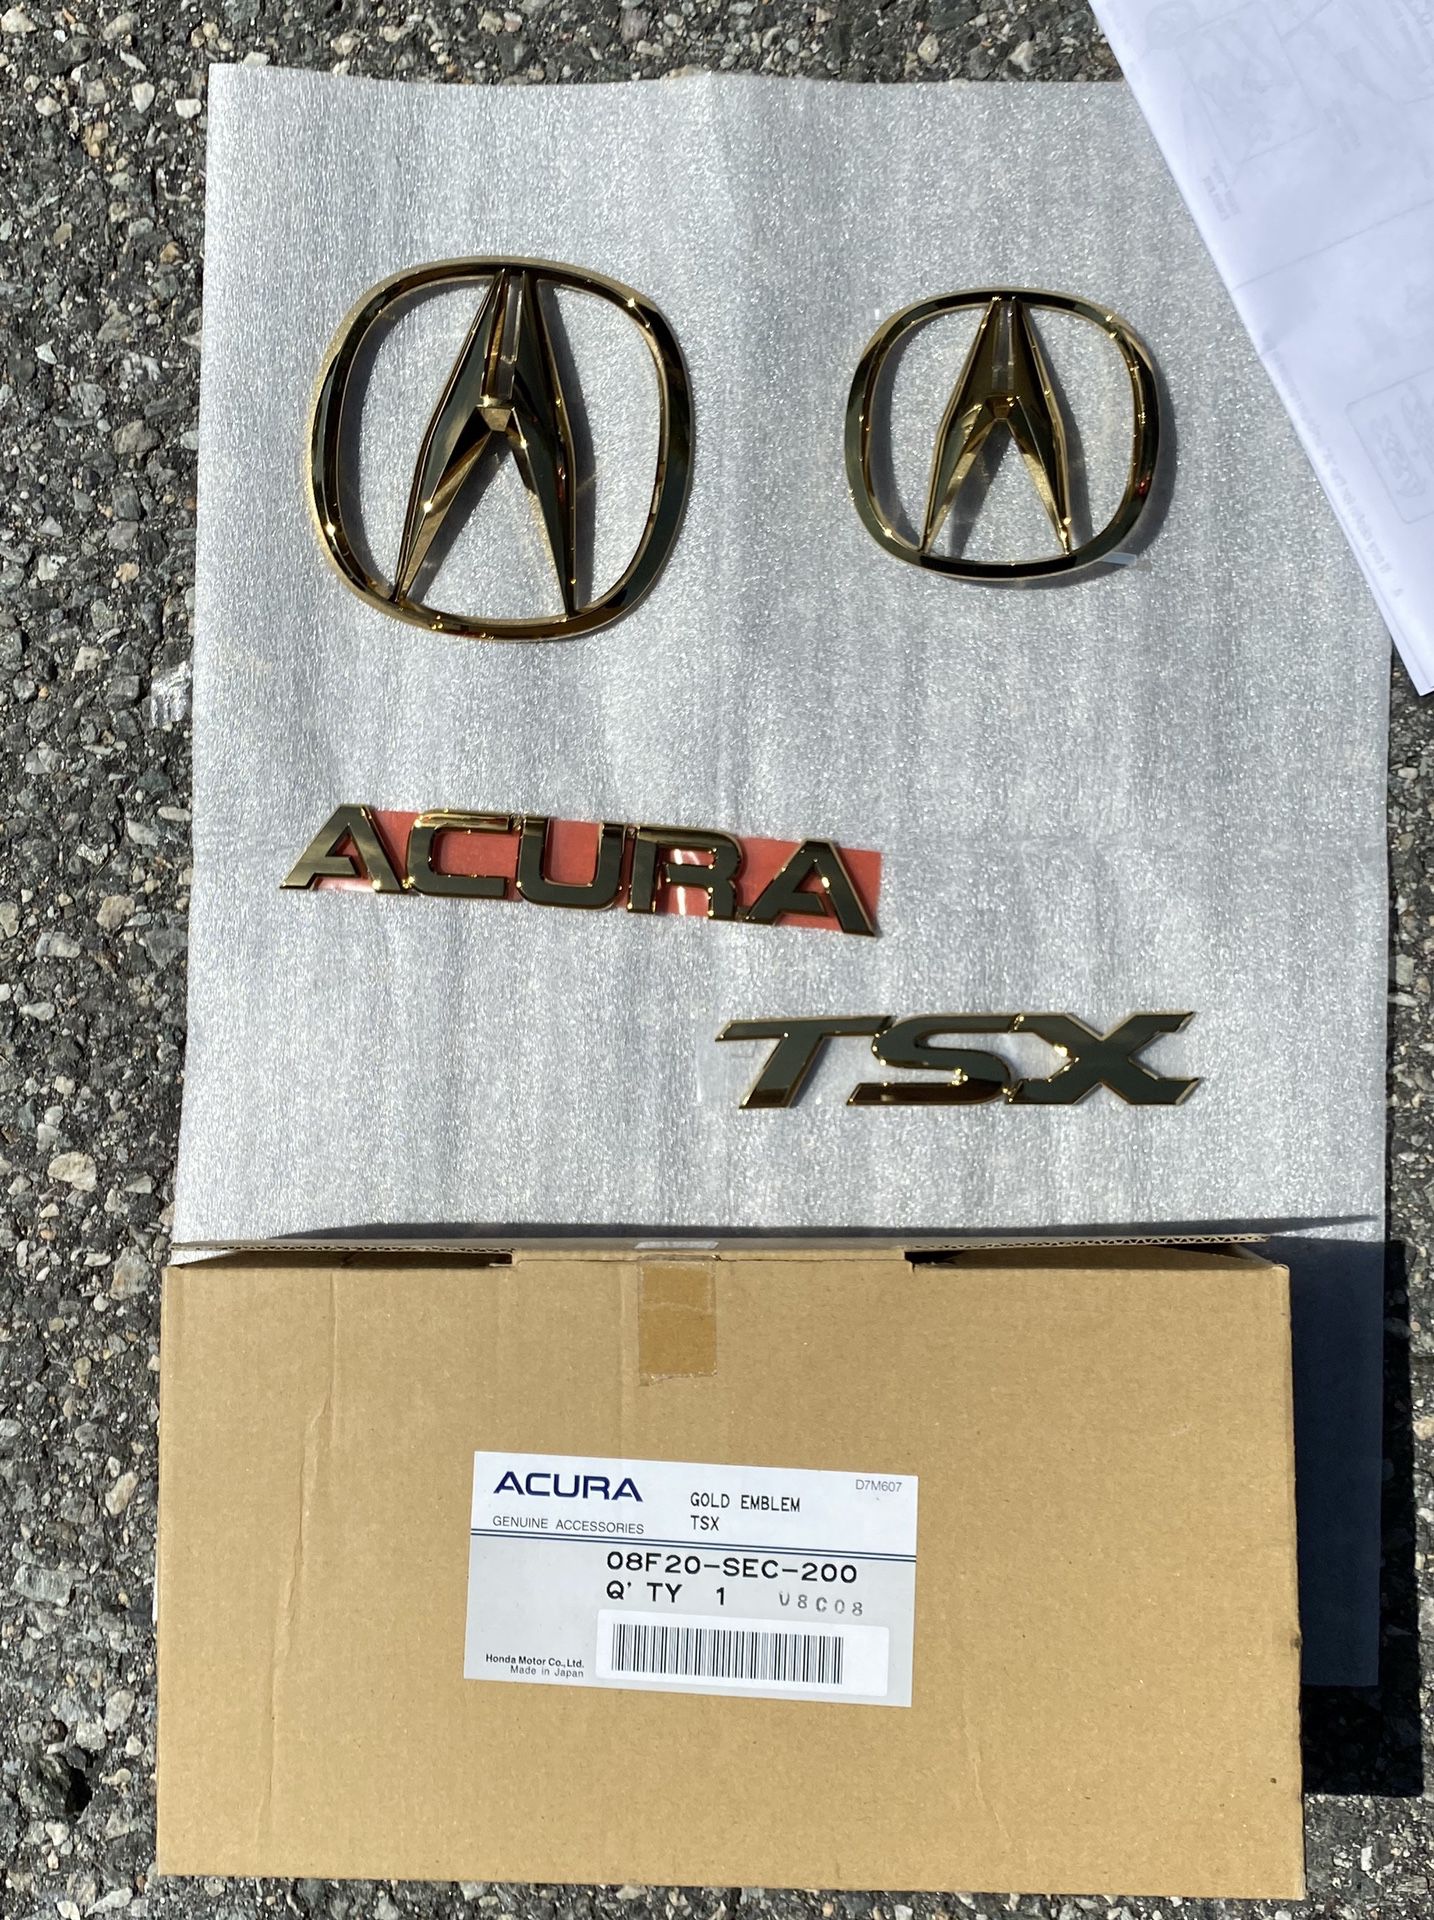 Honda/Acura TSX parts